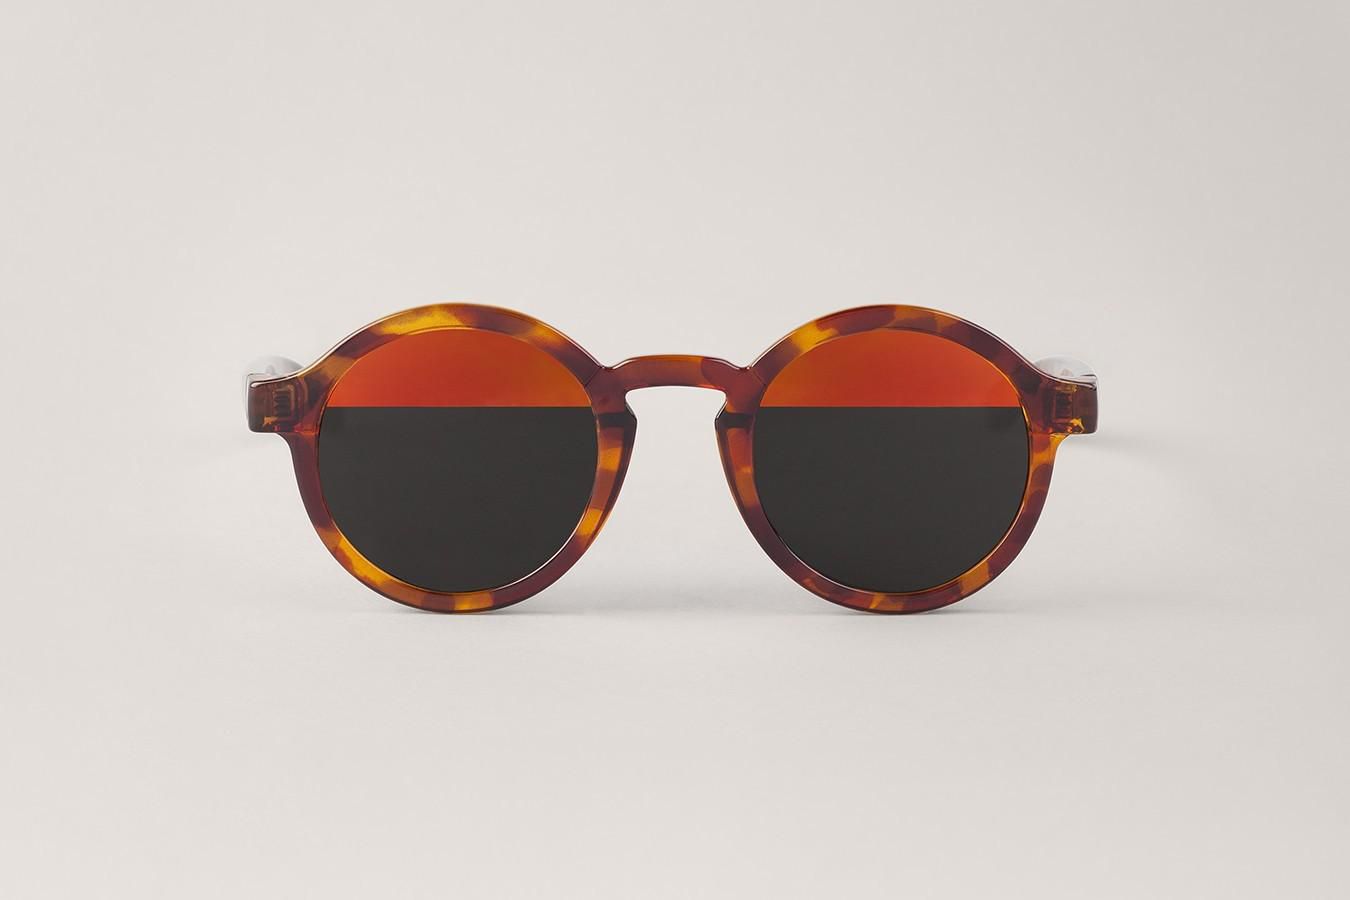 Mr.Boho Vintage Tortoise Frame Sunglasses with Bicolor Red Lenses for Women